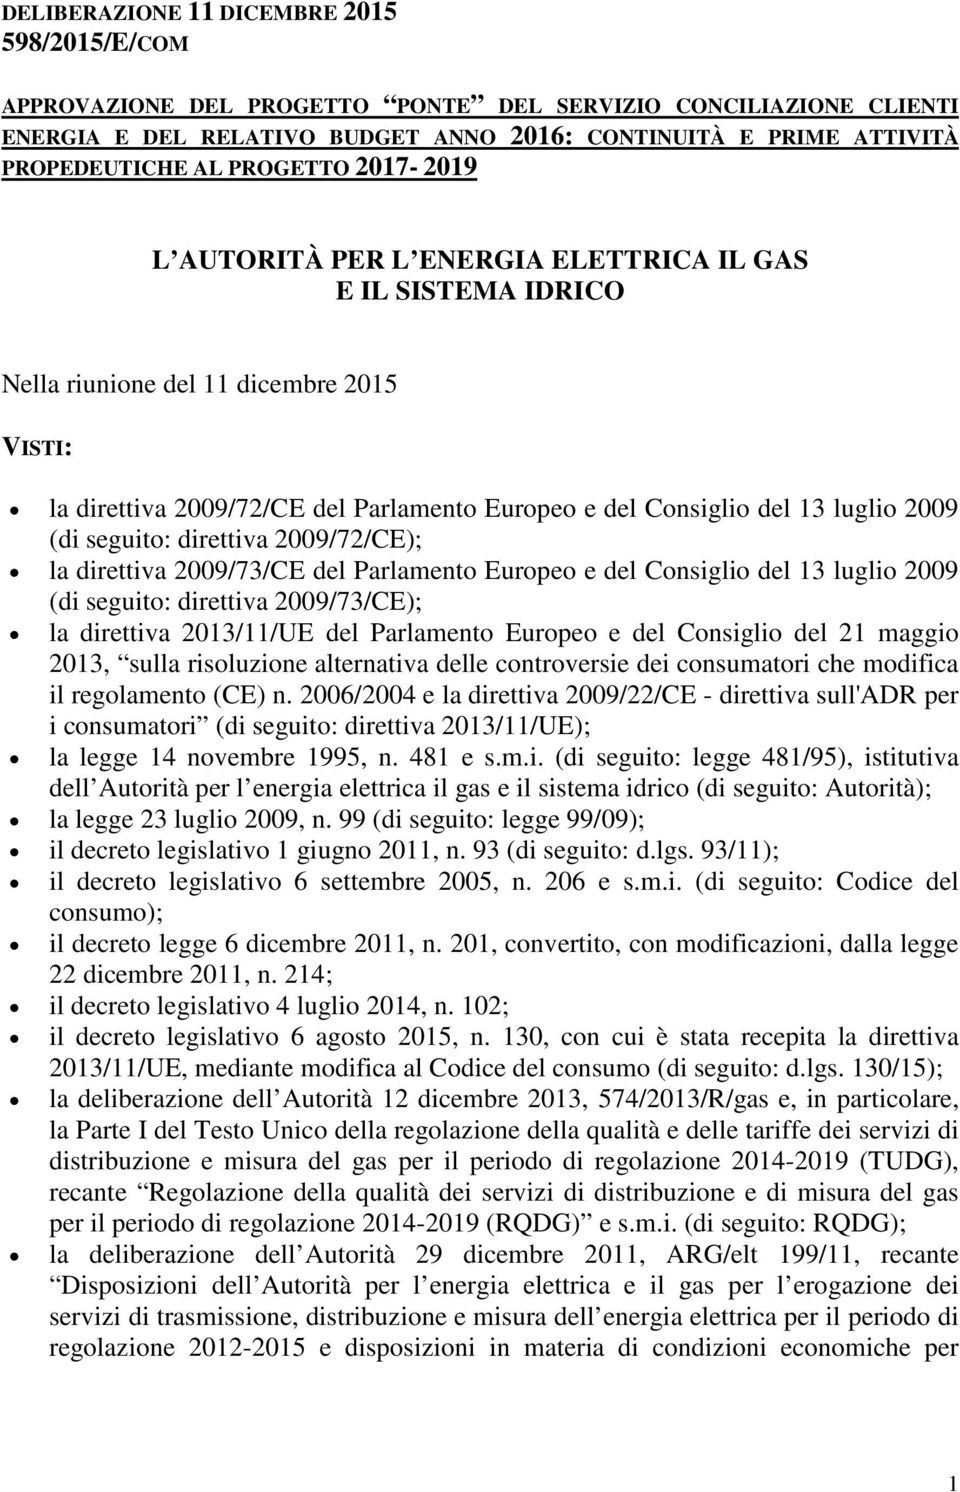 luglio 2009 (di seguito: direttiva 2009/72/CE); la direttiva 2009/73/CE del Parlamento Europeo e del Consiglio del 13 luglio 2009 (di seguito: direttiva 2009/73/CE); la direttiva 2013/11/UE del